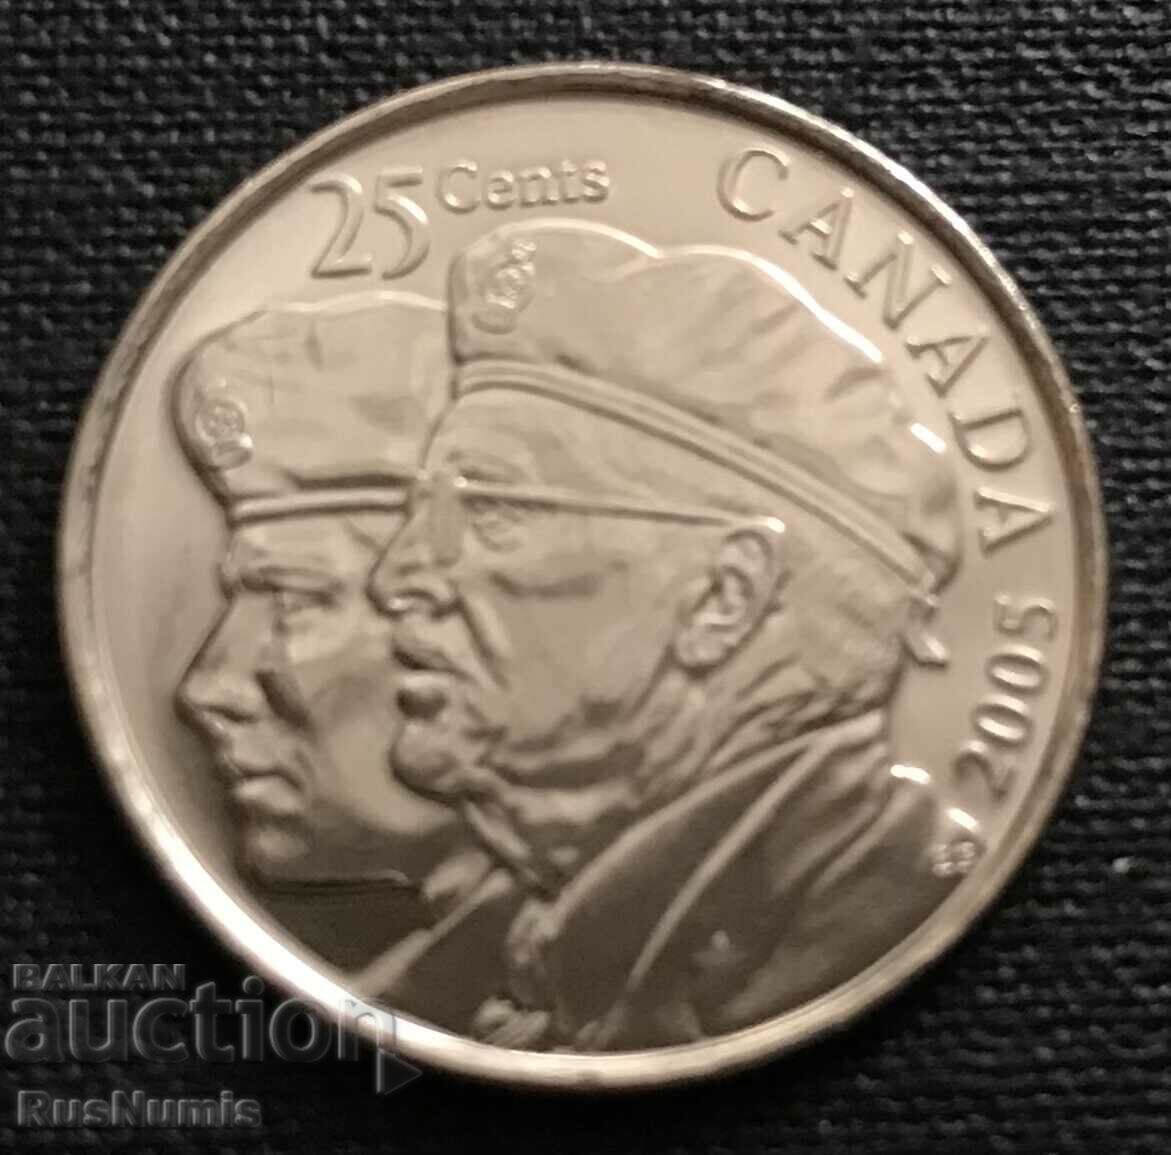 Καναδάς. 25 σεντς 2005 Έτος του Βετεράνου.UNC.